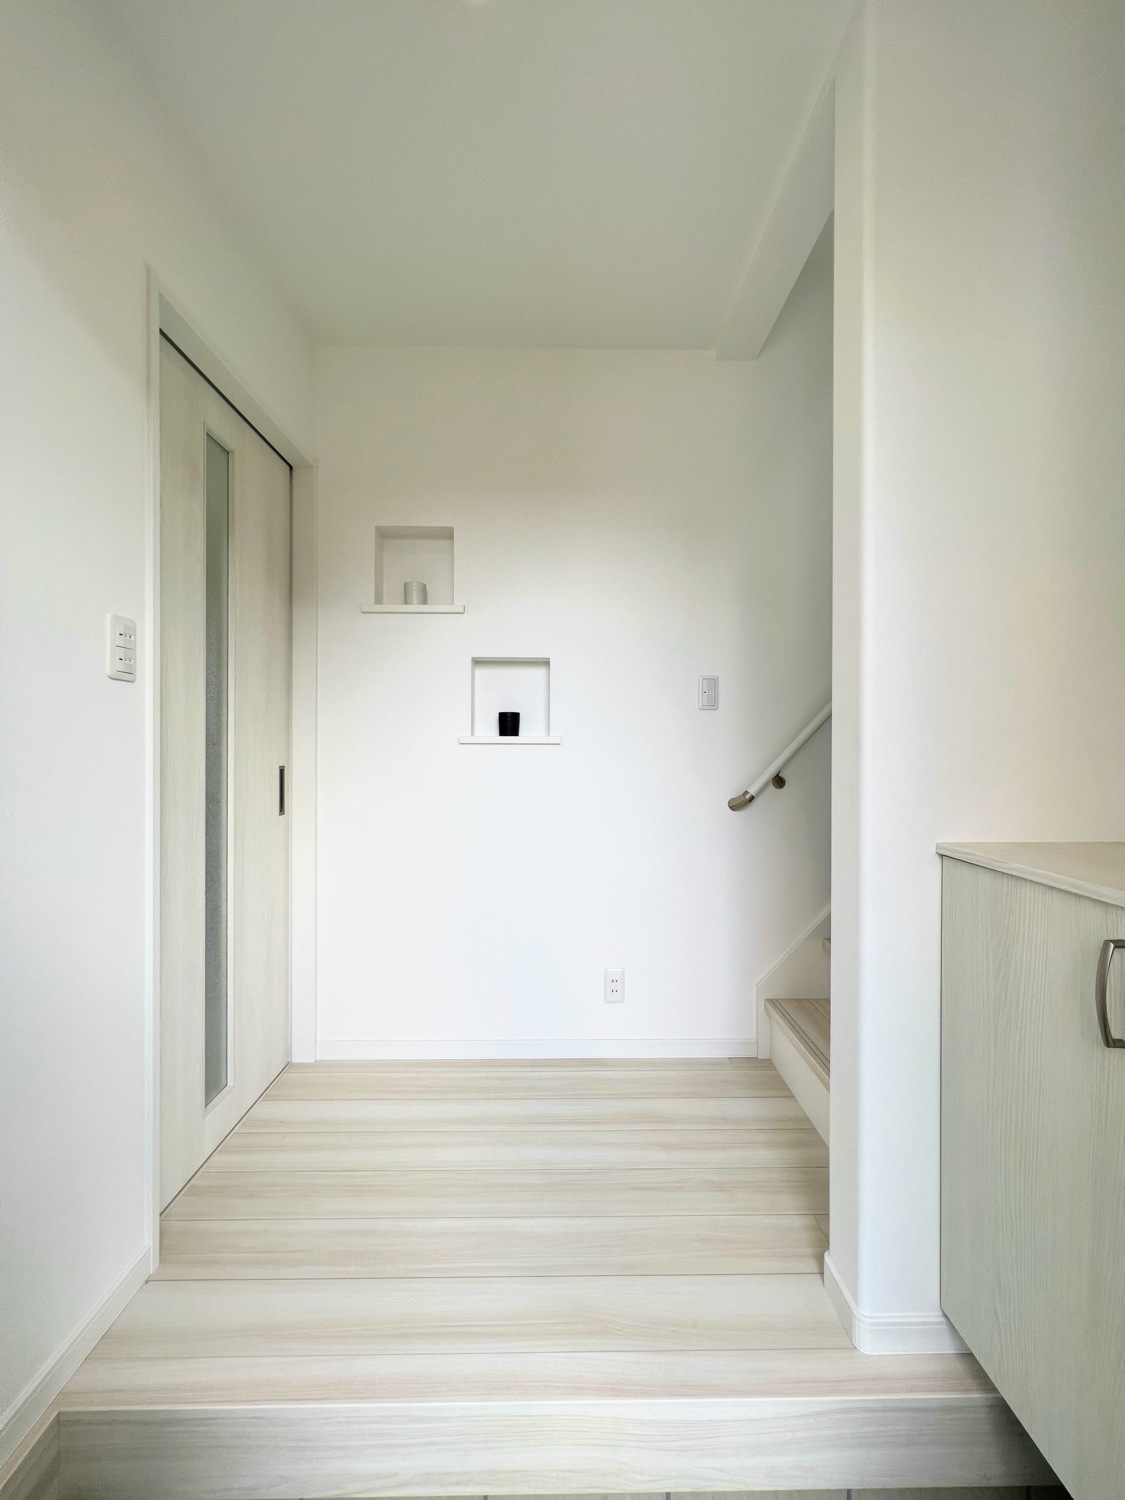 部屋全体がすっきりとして見える白を基調とした、空間の効率的な活用と充実した収納があるシンプルモダンスタイルの家